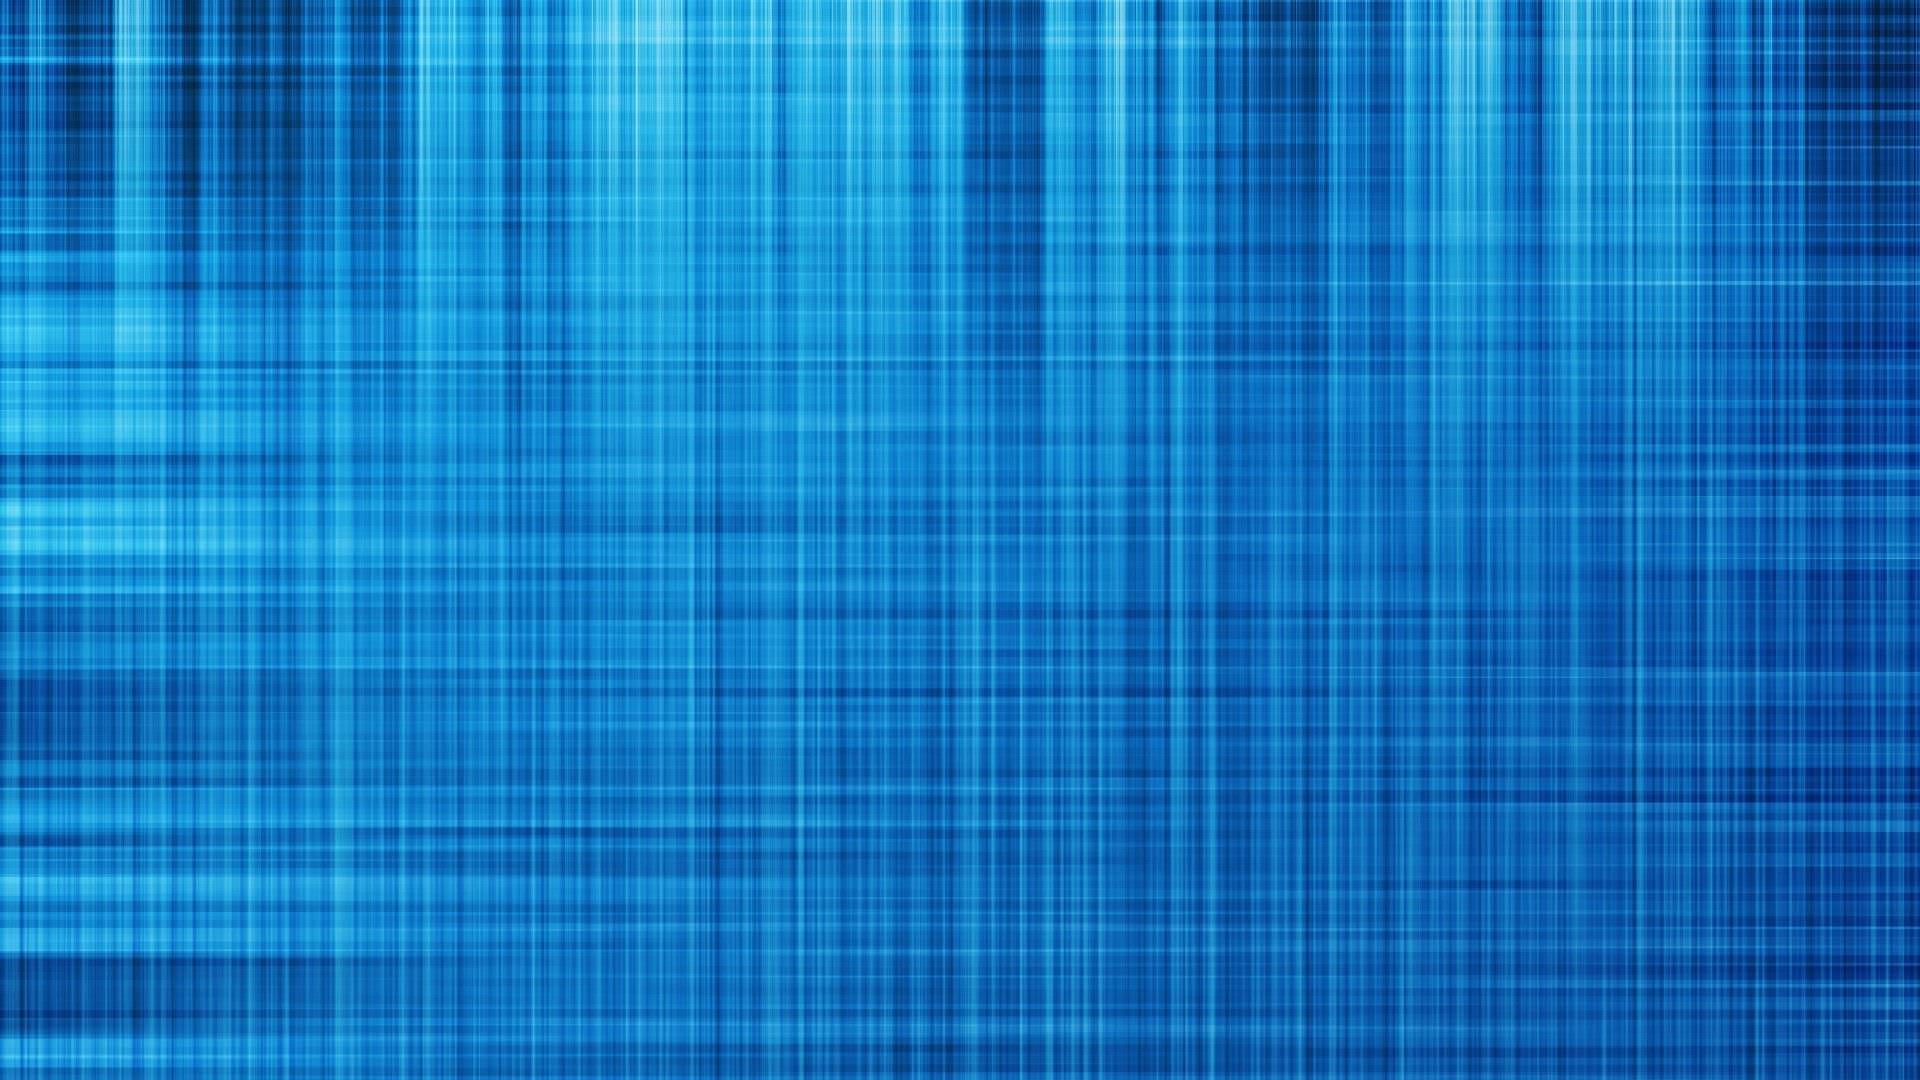 fondo de pantalla simple,azul,tartán,modelo,tartán,turquesa